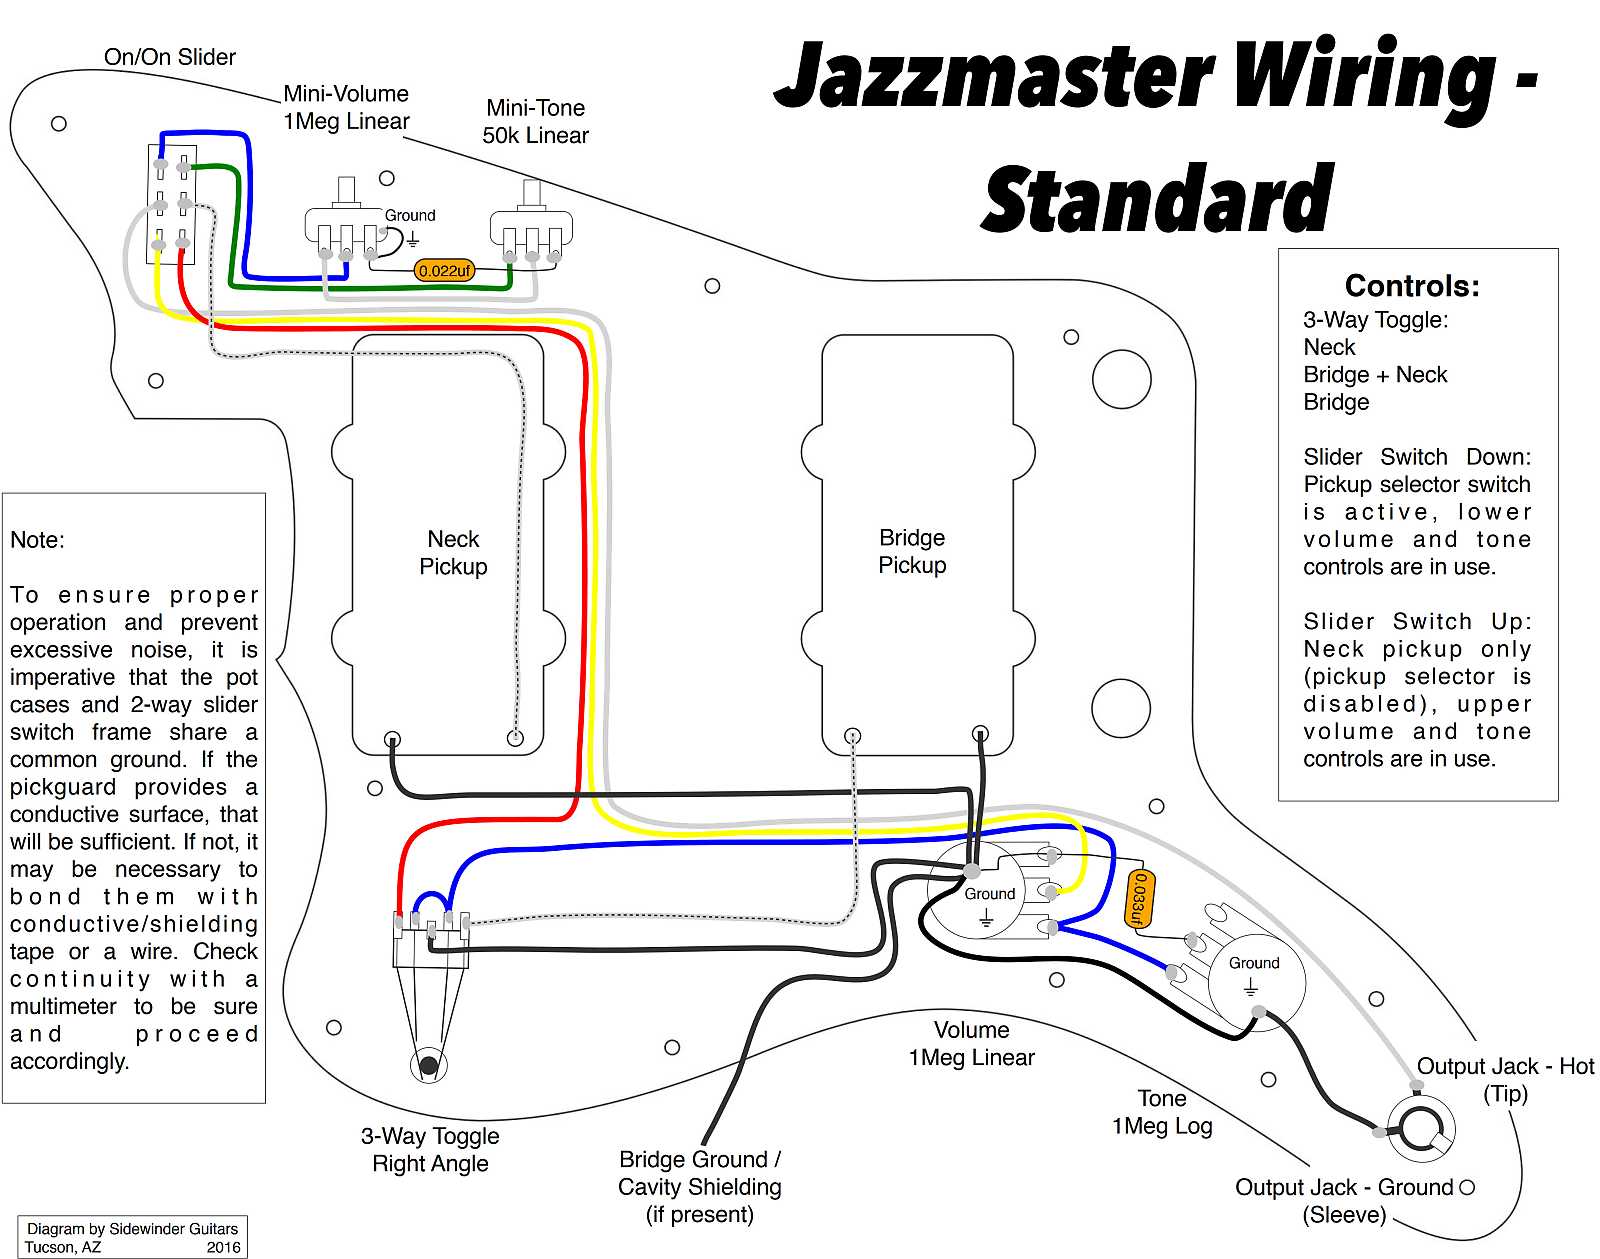 Standard Jazzmaster wiring diagram, by Sidewinder Guitars